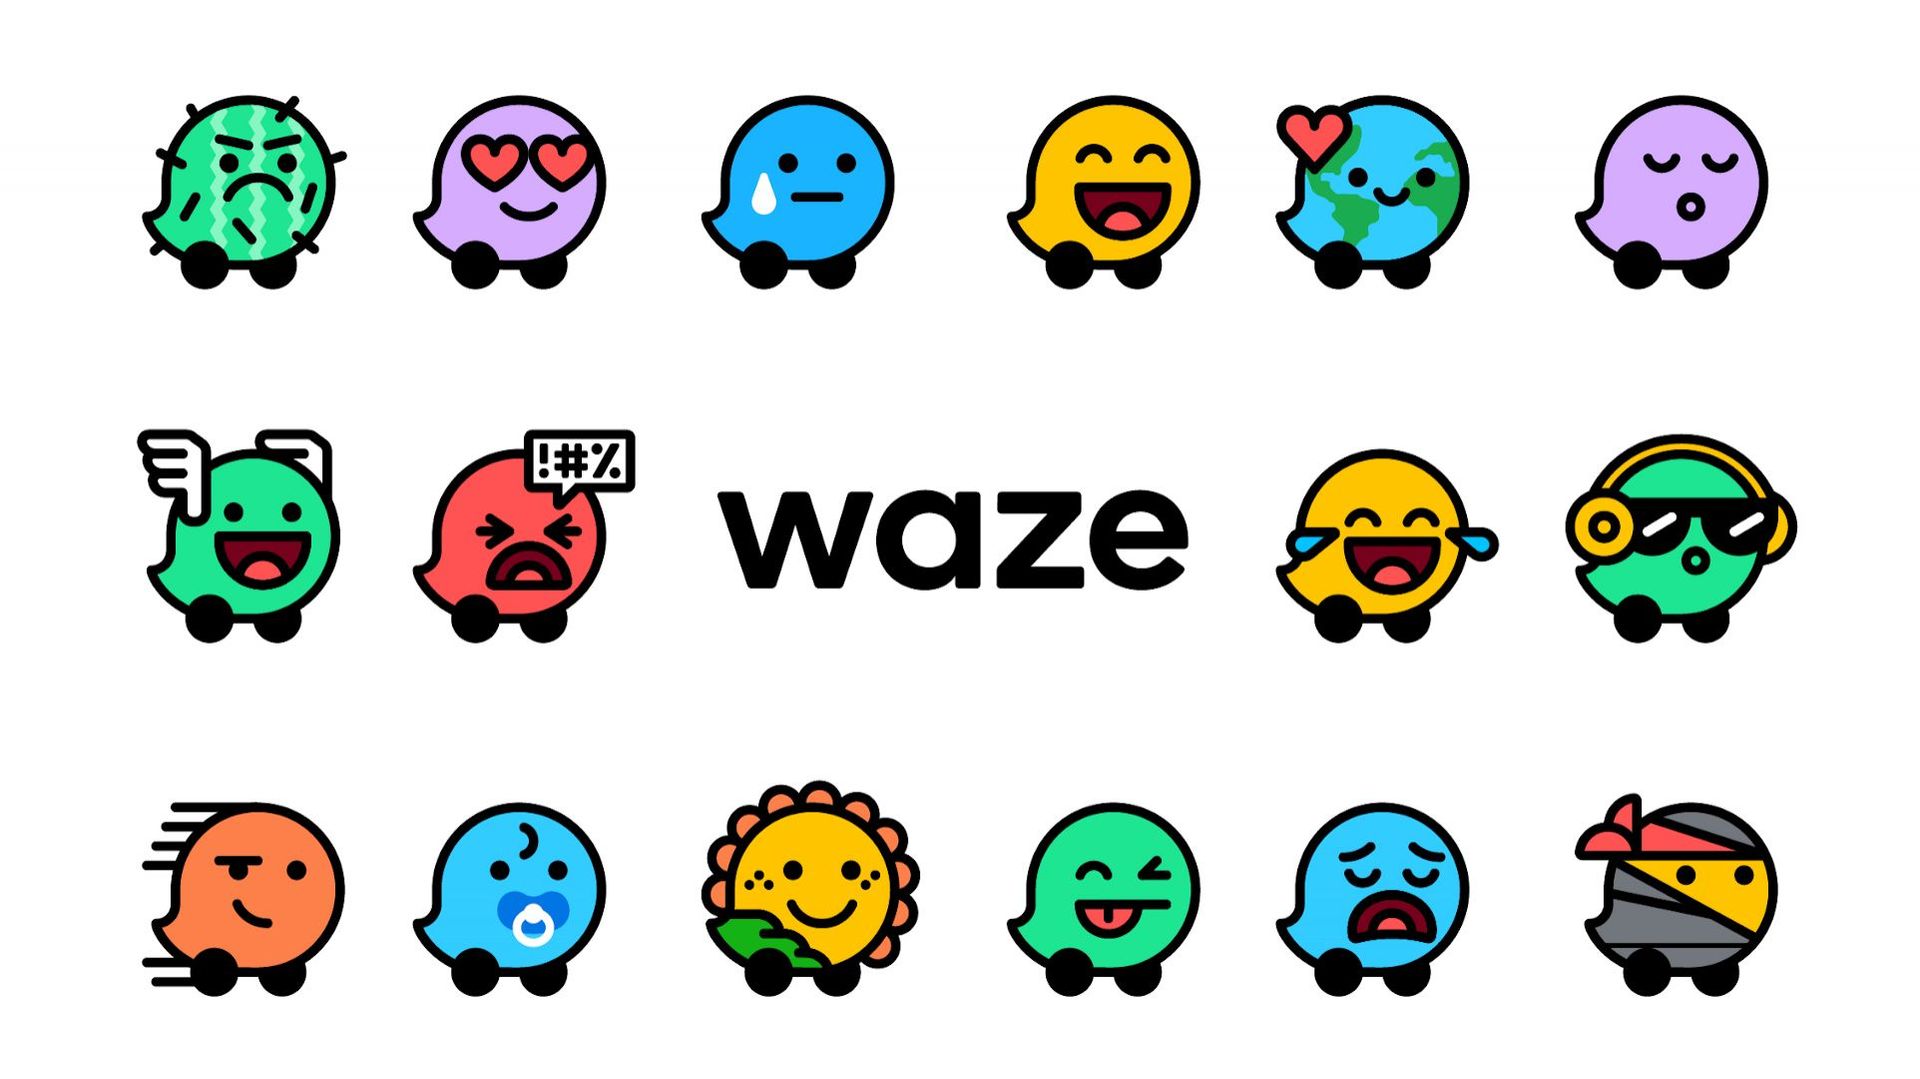 Waze inaugure une trentaine de nouvelles "humeurs" à partager sur le réseau.